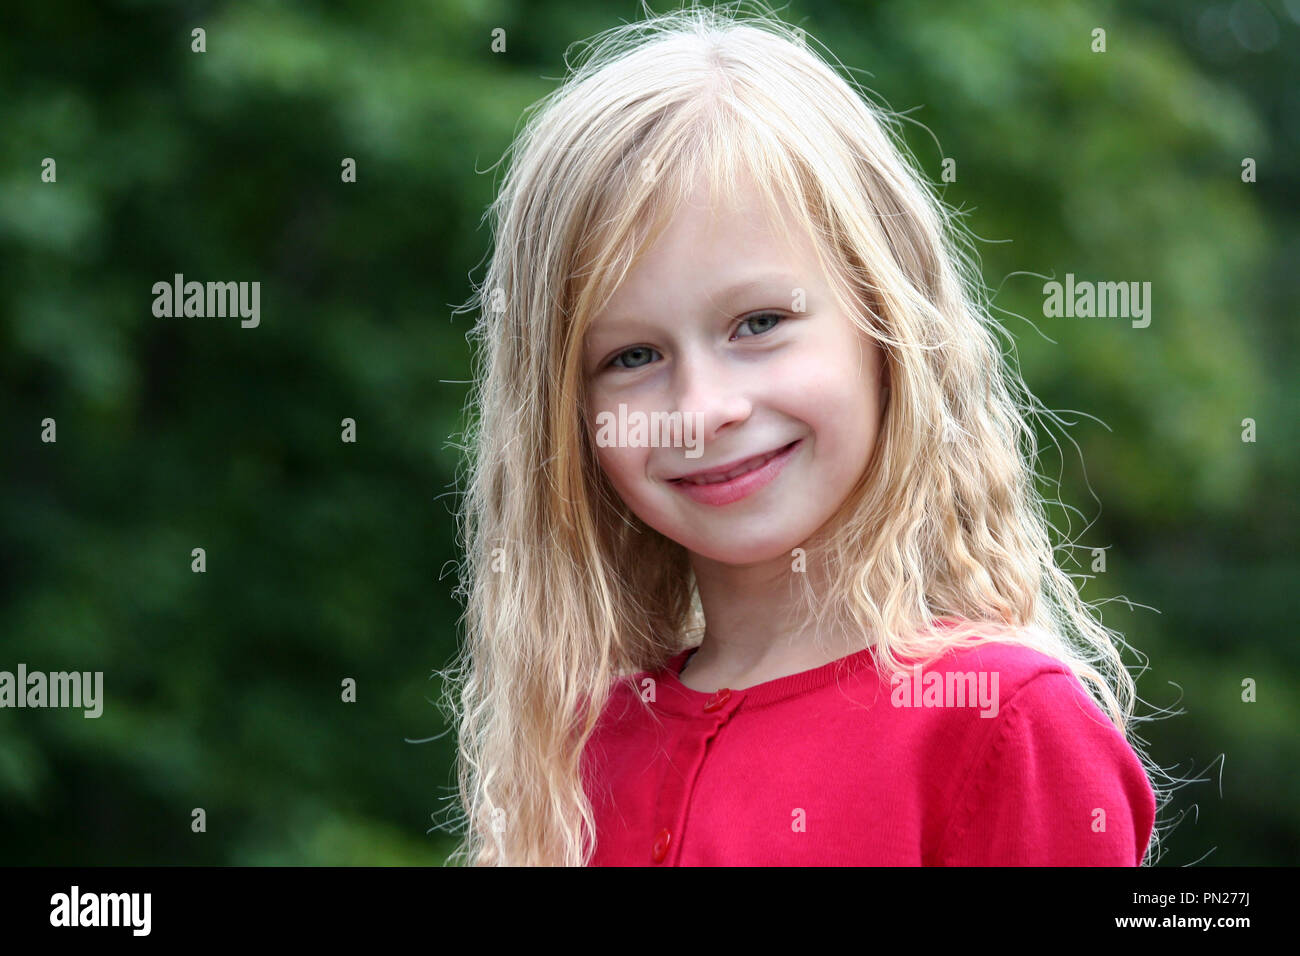 Portrait kleine Mädchen mit langen blonden Haaren in einem roten Pullover lächelnd und direkt auf die Kamera im Hintergrund, grüne Bäume, dunkles Laub, Stockfoto